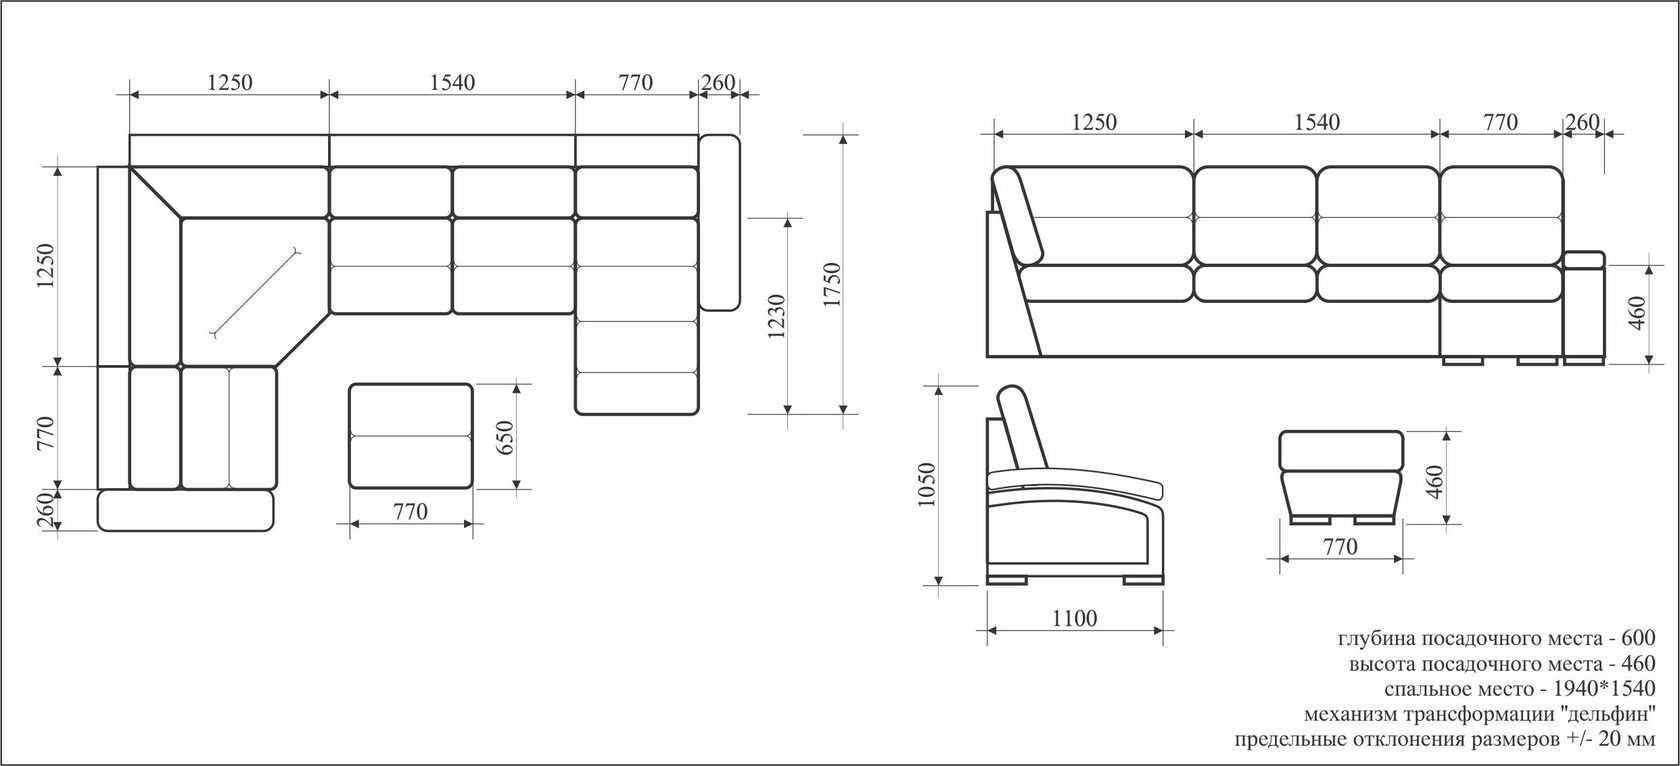 размер двуспального дивана в разложенном виде